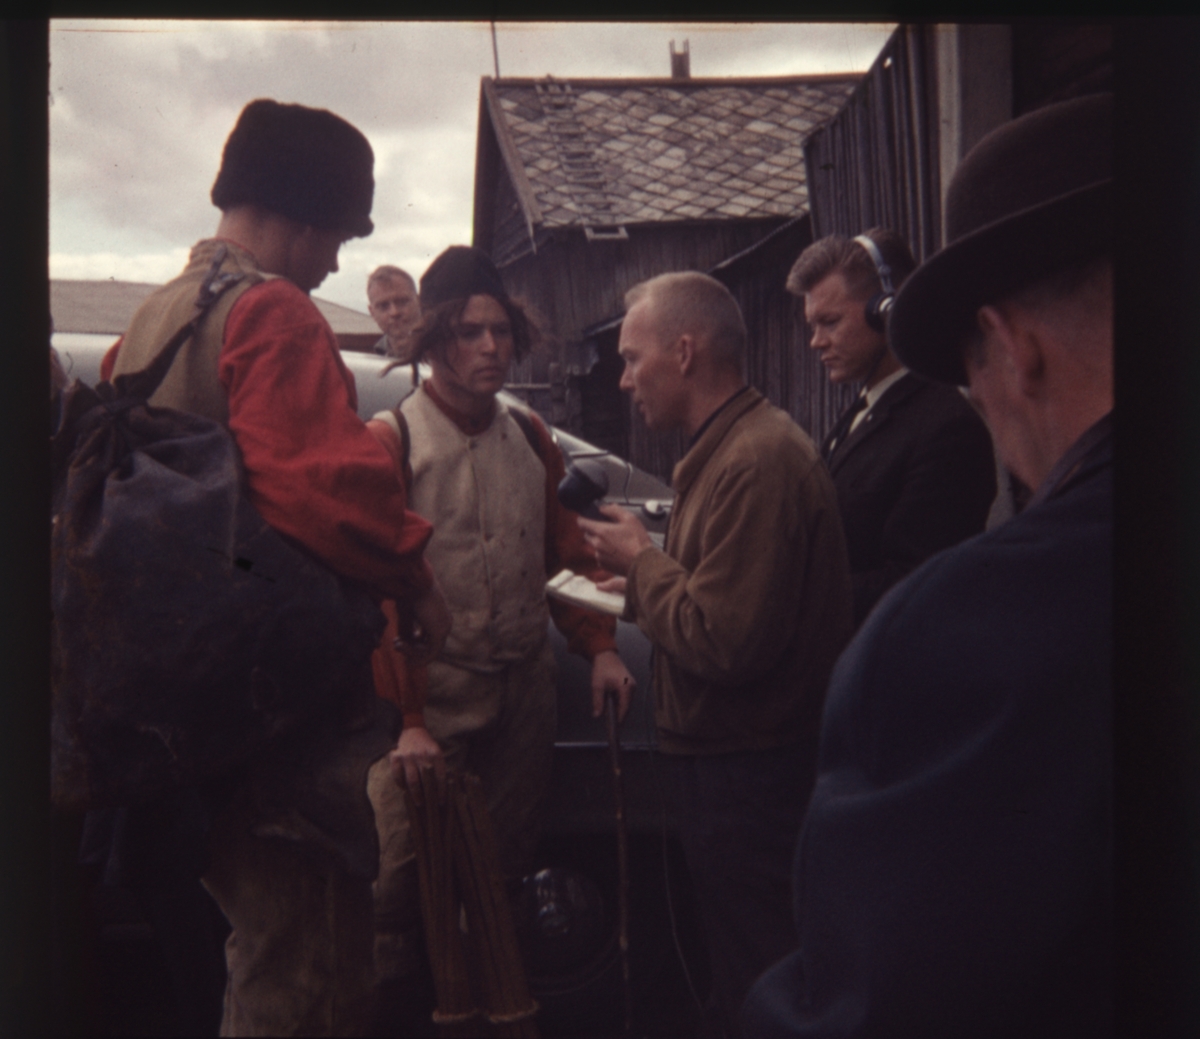 Deltagere på opptog under Bergmannsdag på Røros intervjues av radioreporter, antagelig på 1960-tallet.